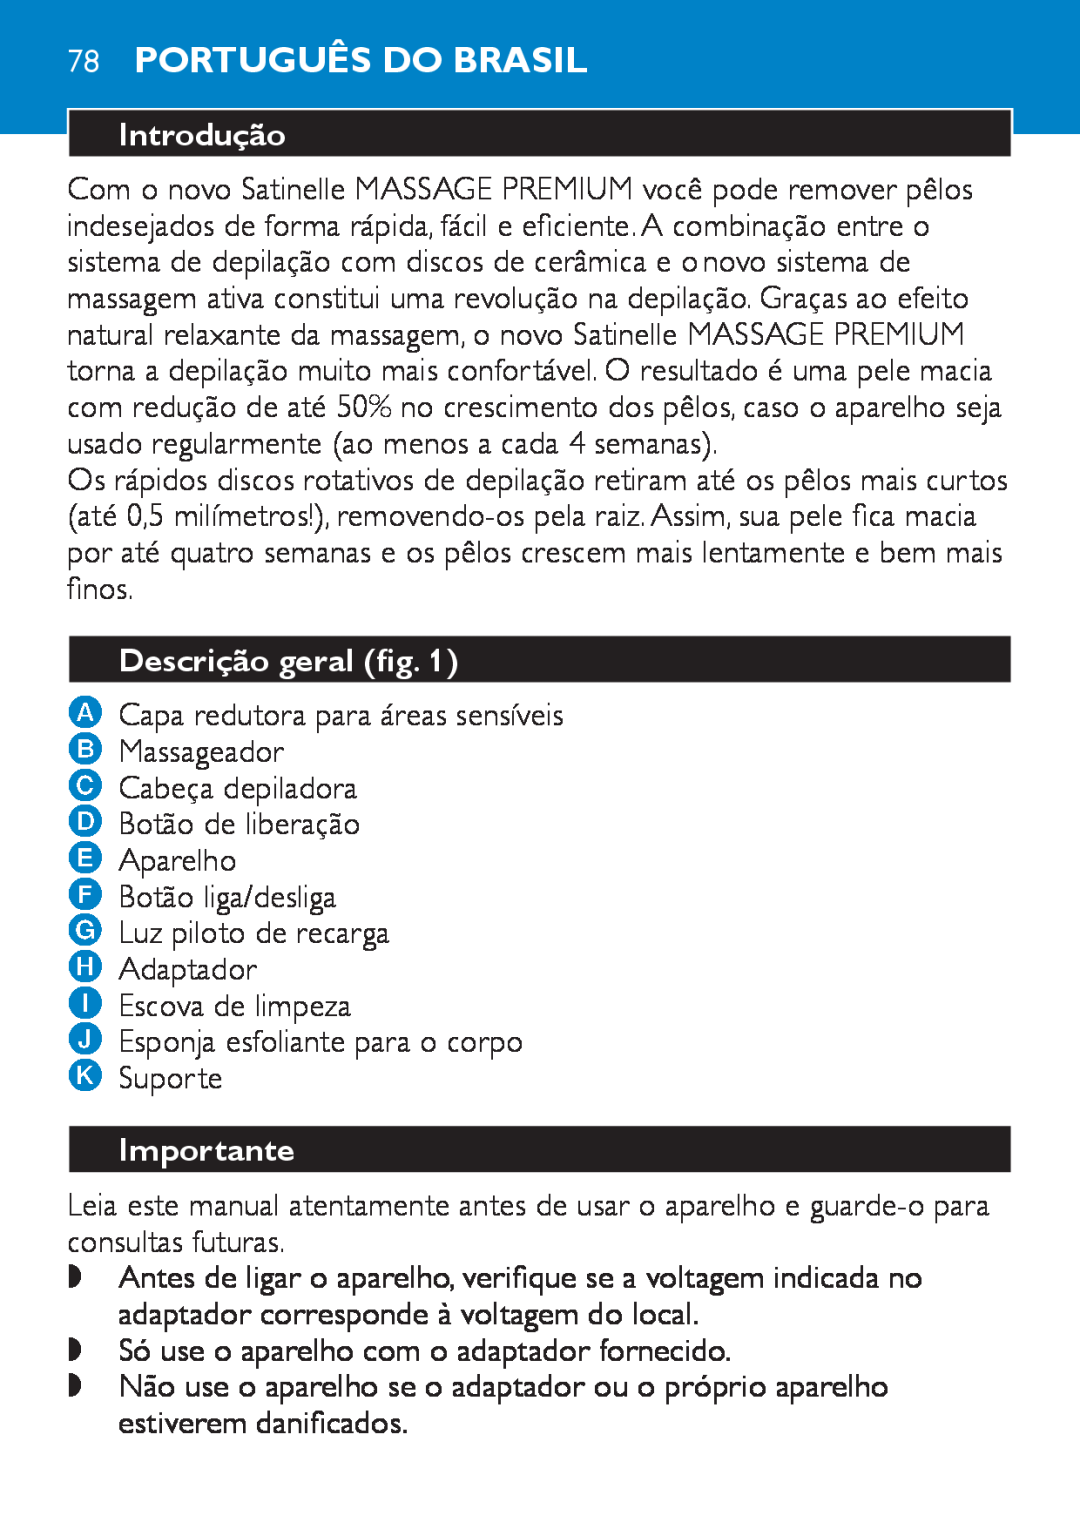 Philips HP6490 manual 78Português do Brasil, Introdução, Descrição geral fig, Importante 